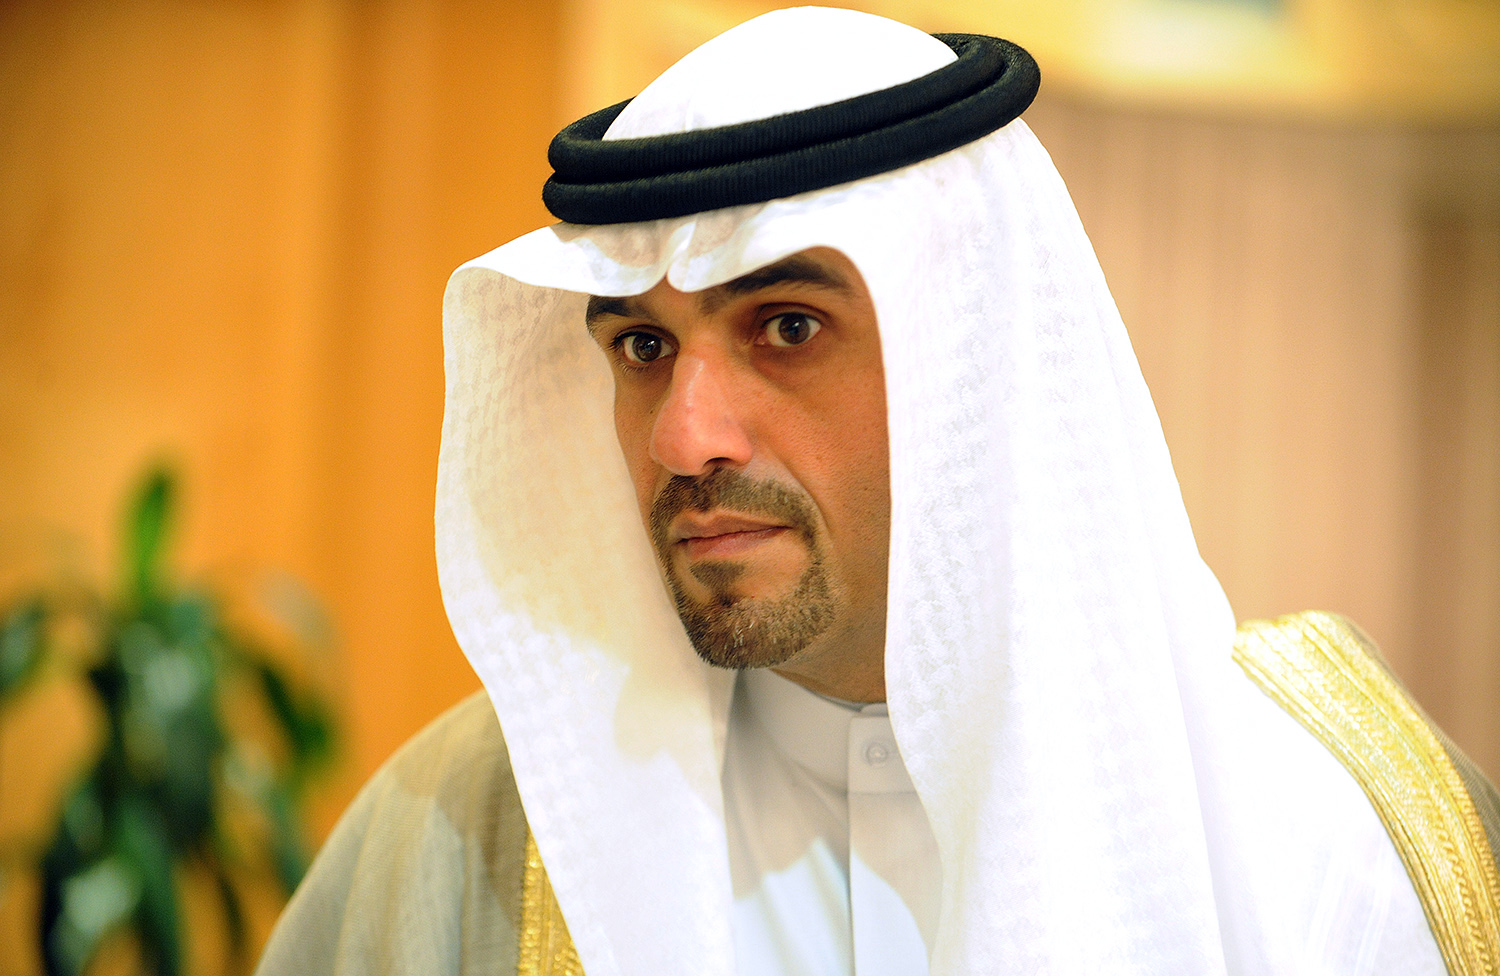 نائب رئيس مجلس الوزراء ووزير المالية ووزير النفط الكويتي بالوكالة أنس الصالح